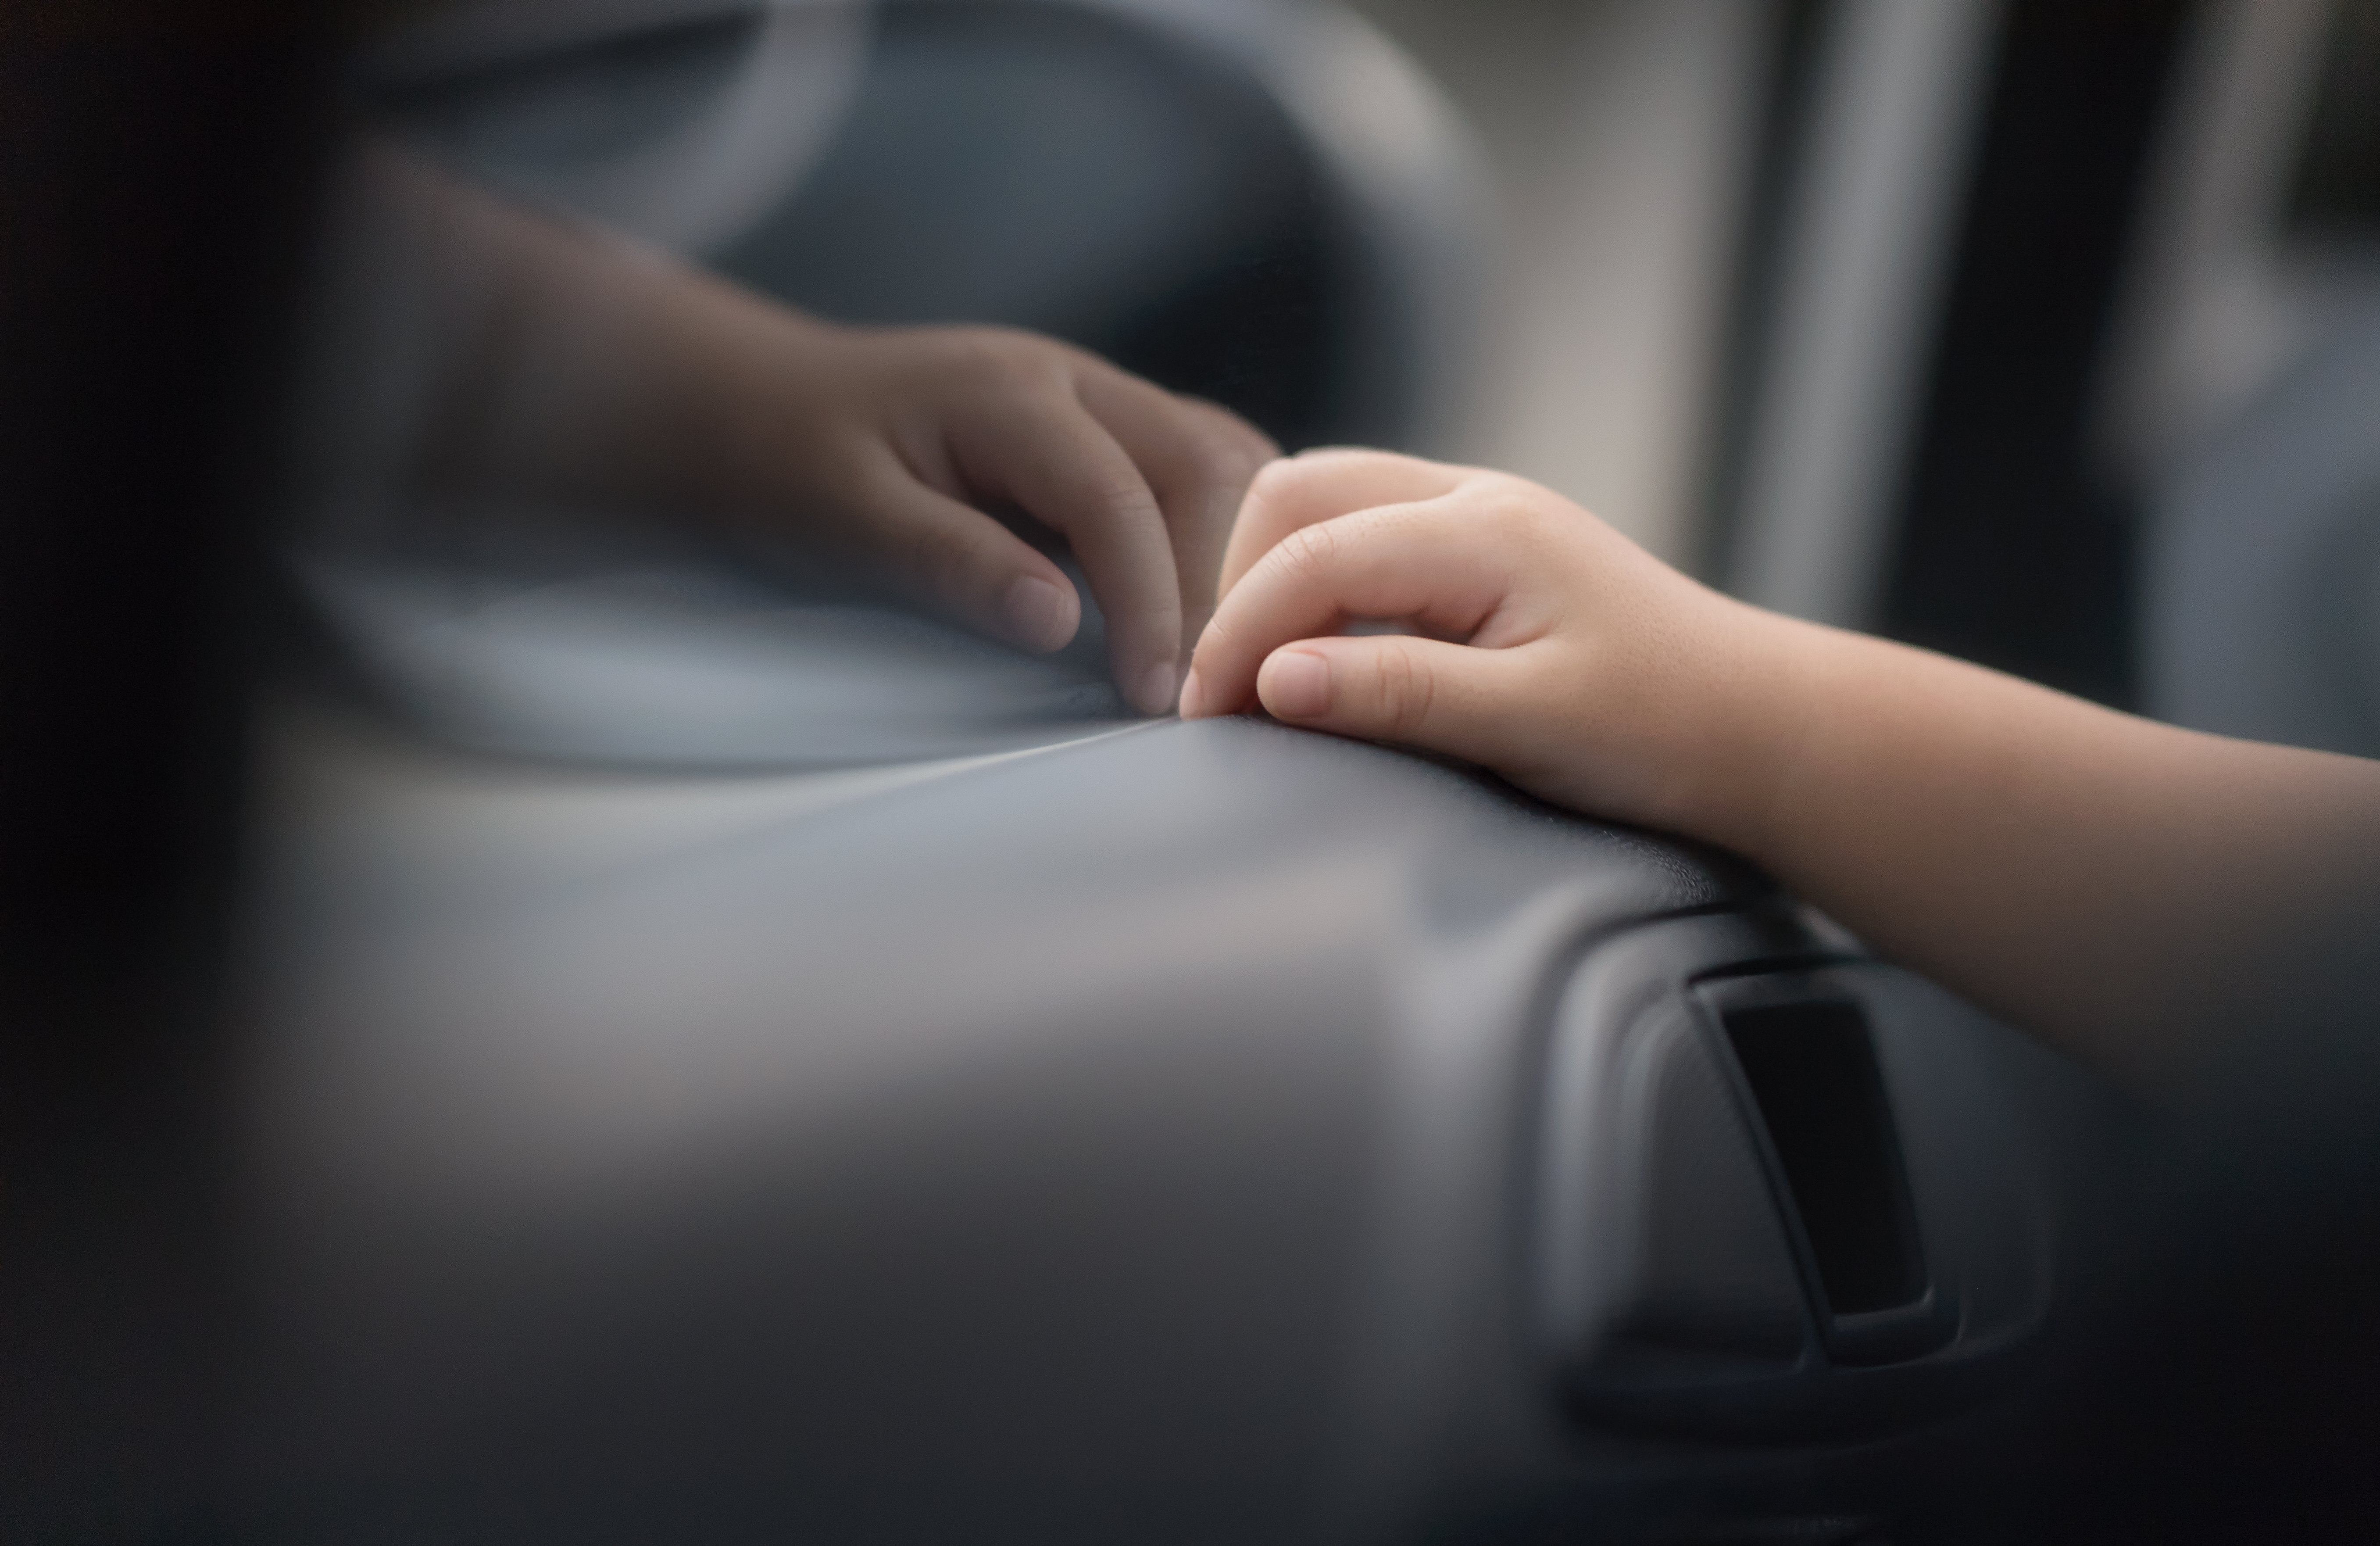 Main d'un enfant dans une voiture | Photo : Shutterstock